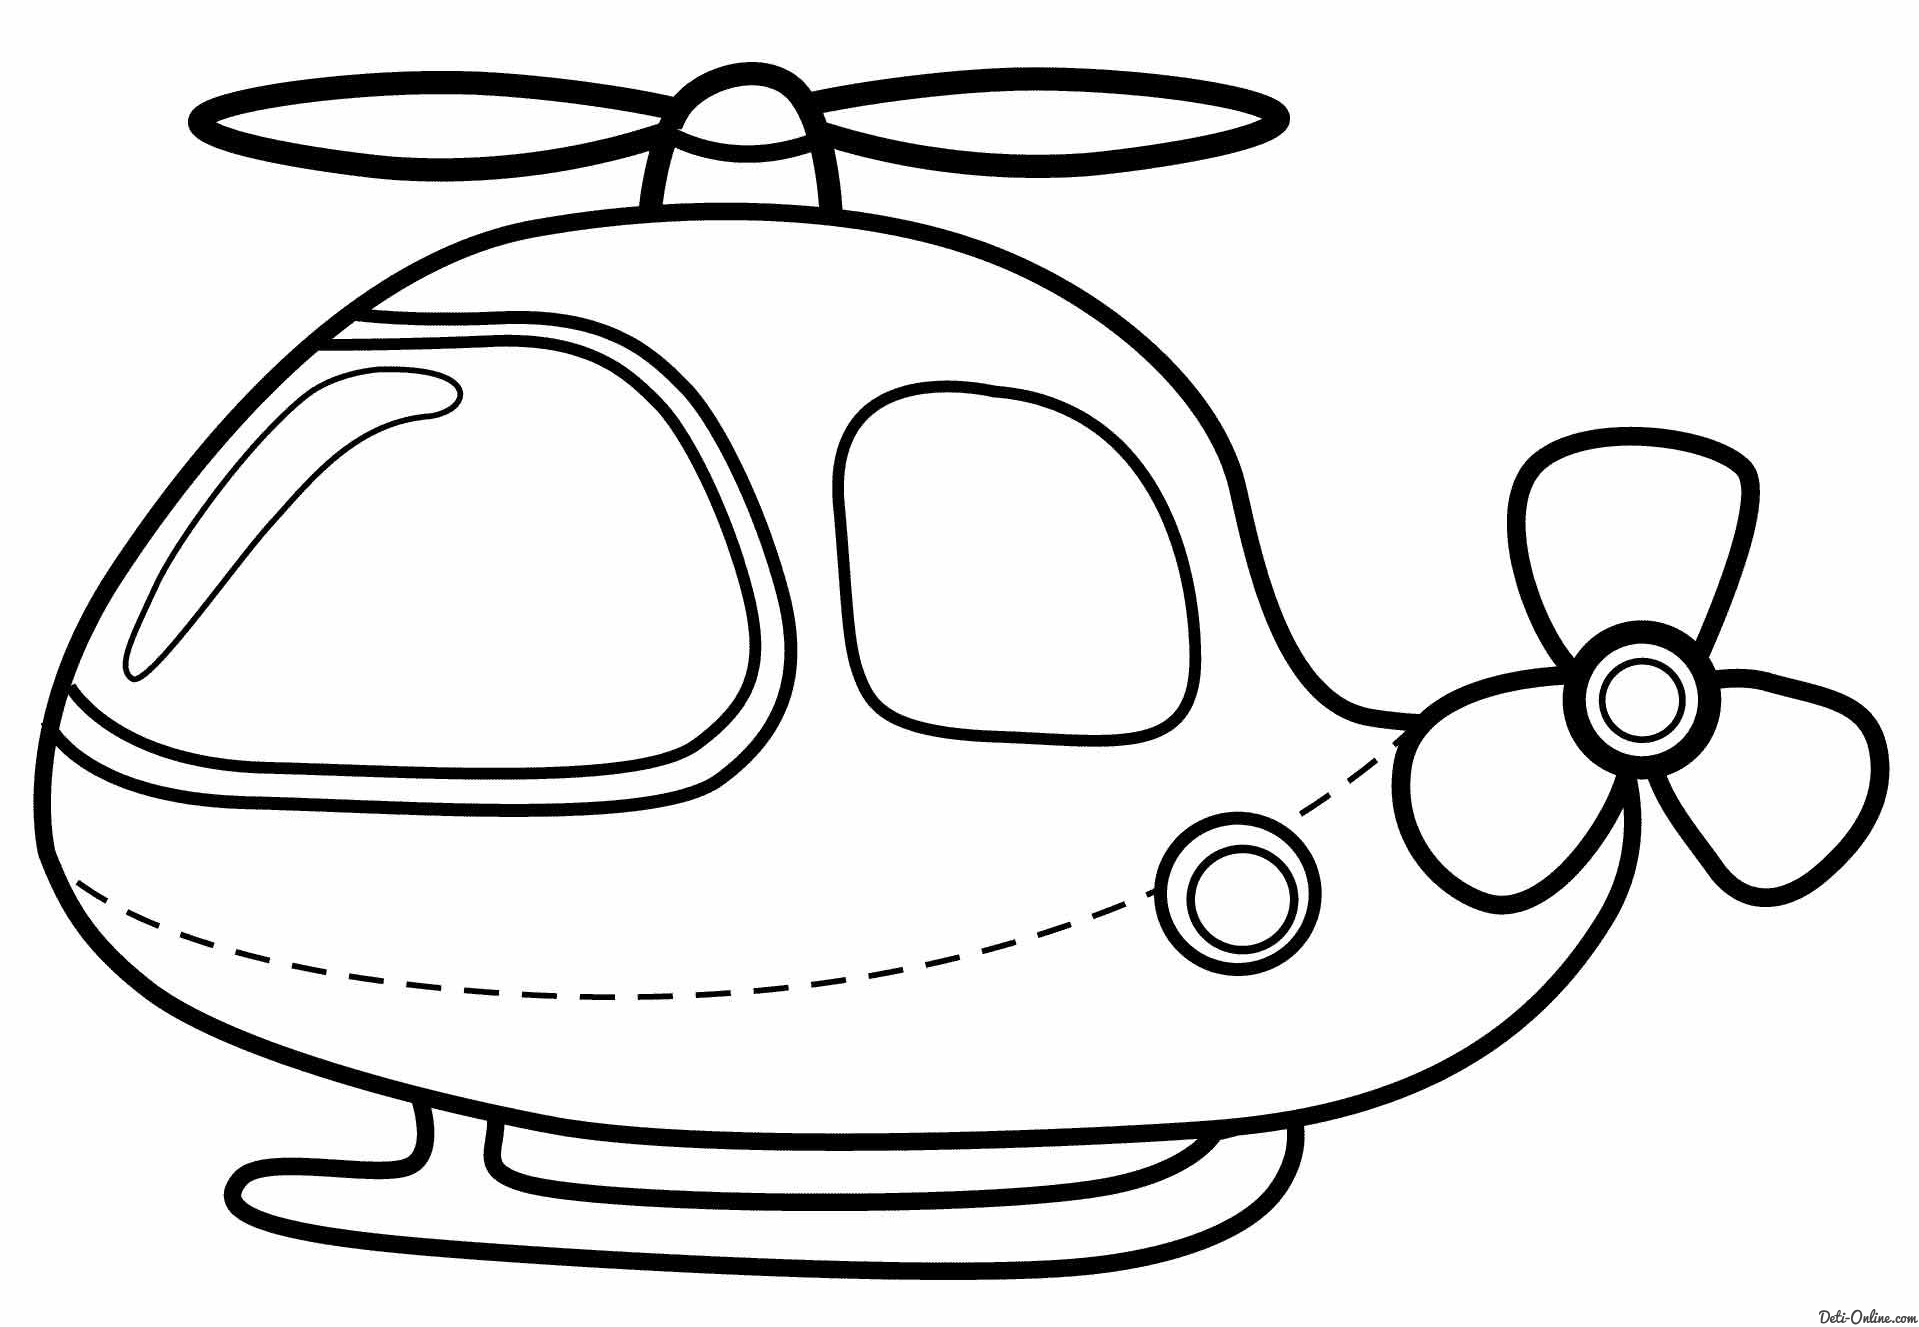  раскраски с вертолетами для детей                 раскраски на тему вертолеты для детей.  раскраски с вертолетами для мальчиков и девочек. раскраски для детей     